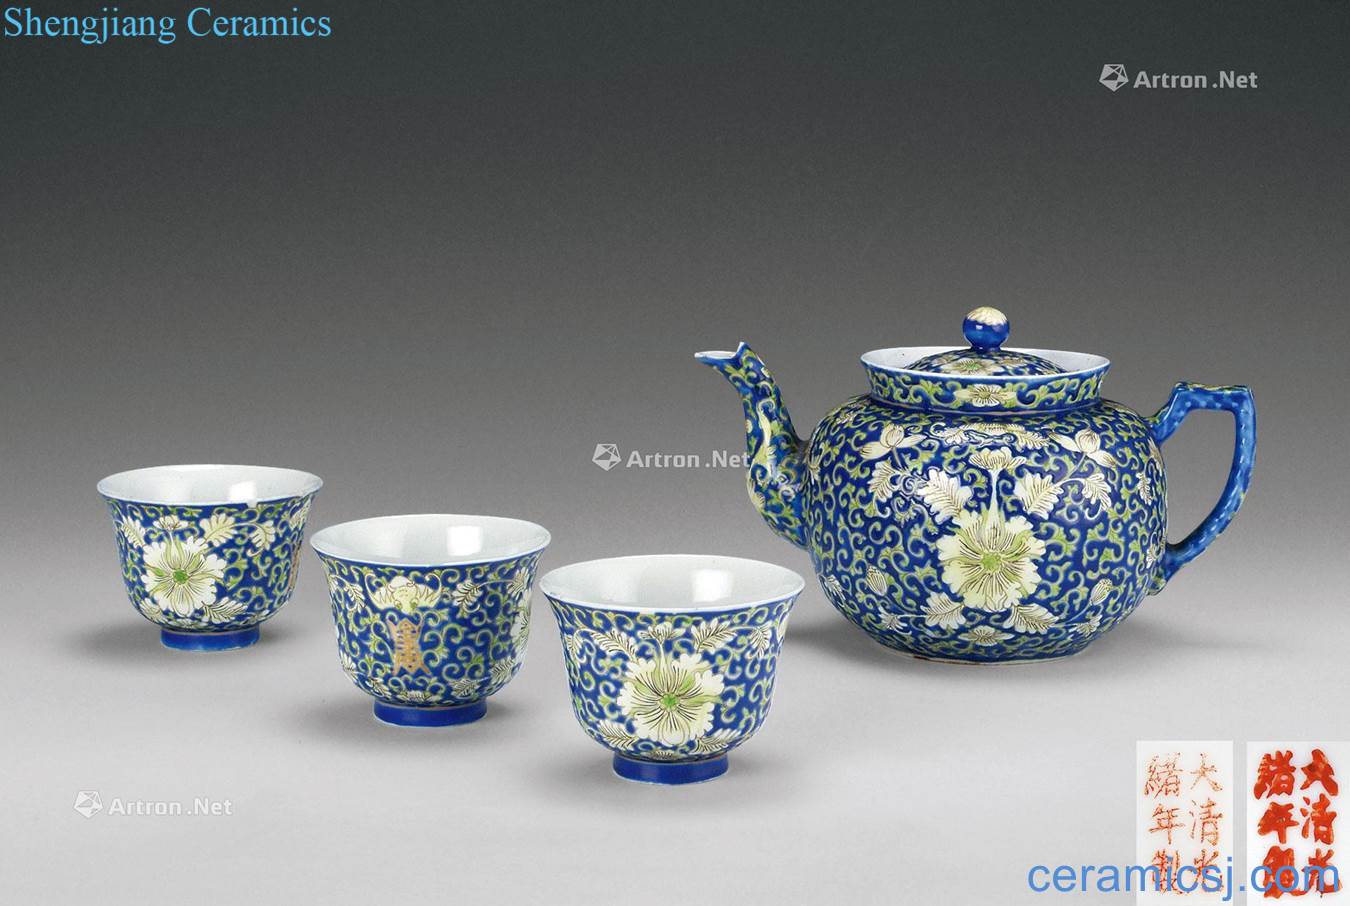 Qing emperor guangxu (1875-1908) to pastel blue lotus flower grain teapot Cup (four pieces a set)